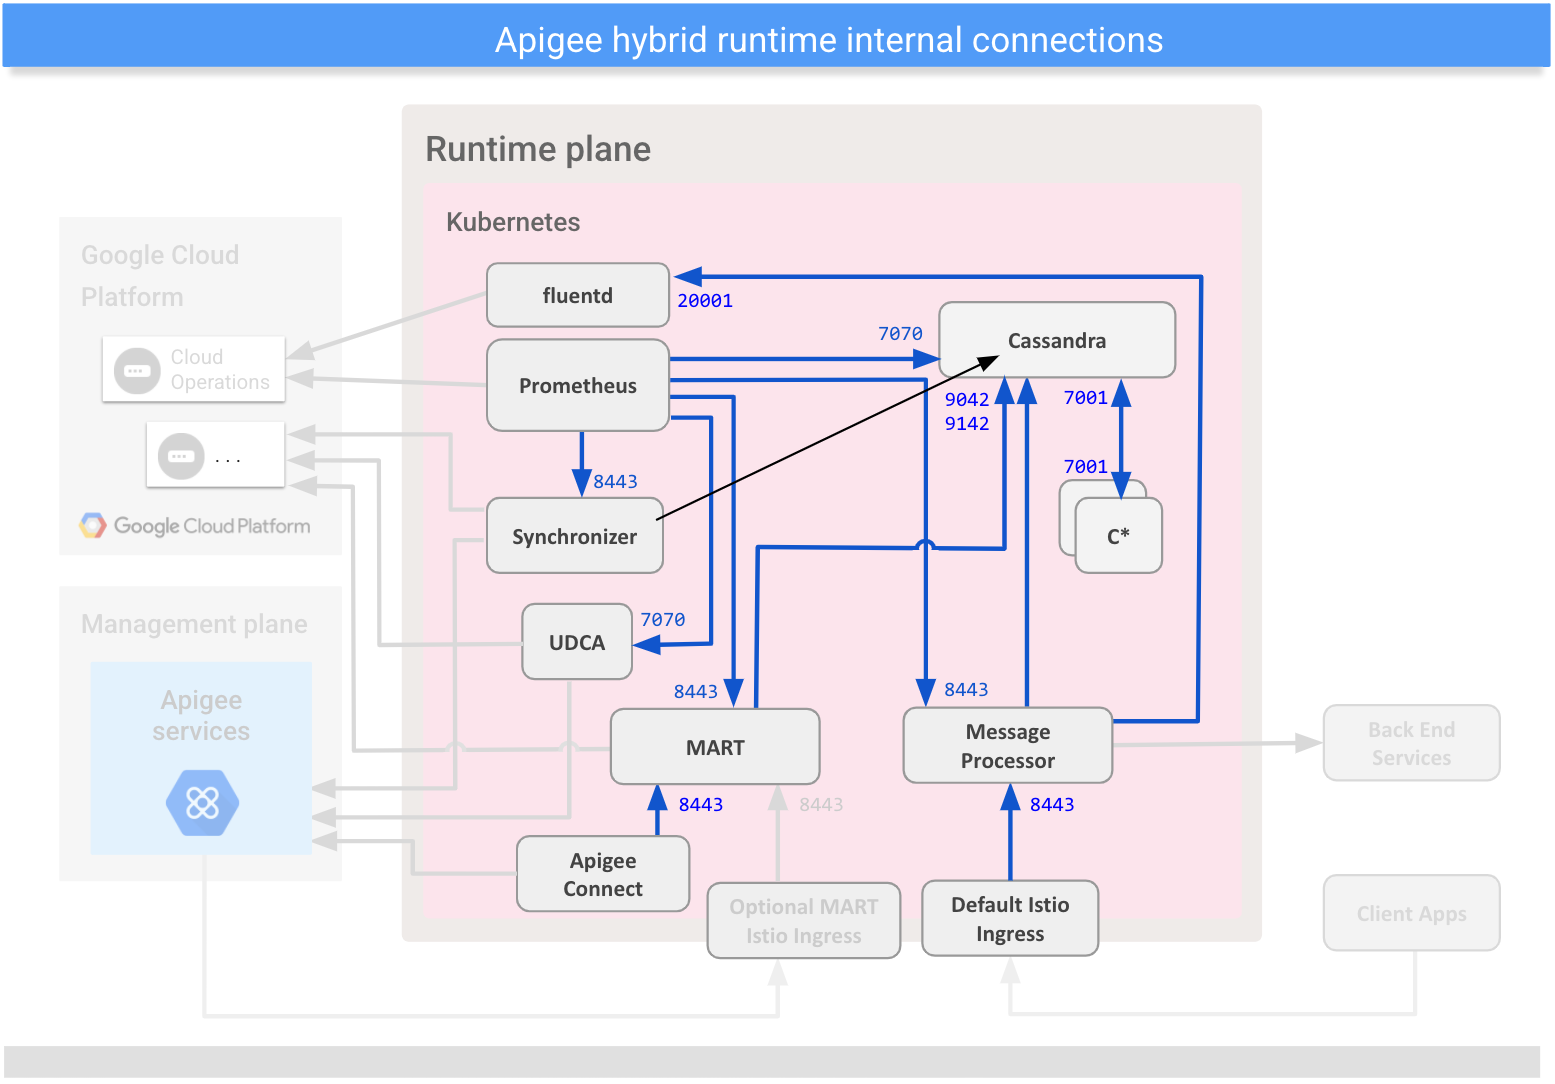 Mostra le connessioni tra i componenti interni sul piano di runtime ibrido